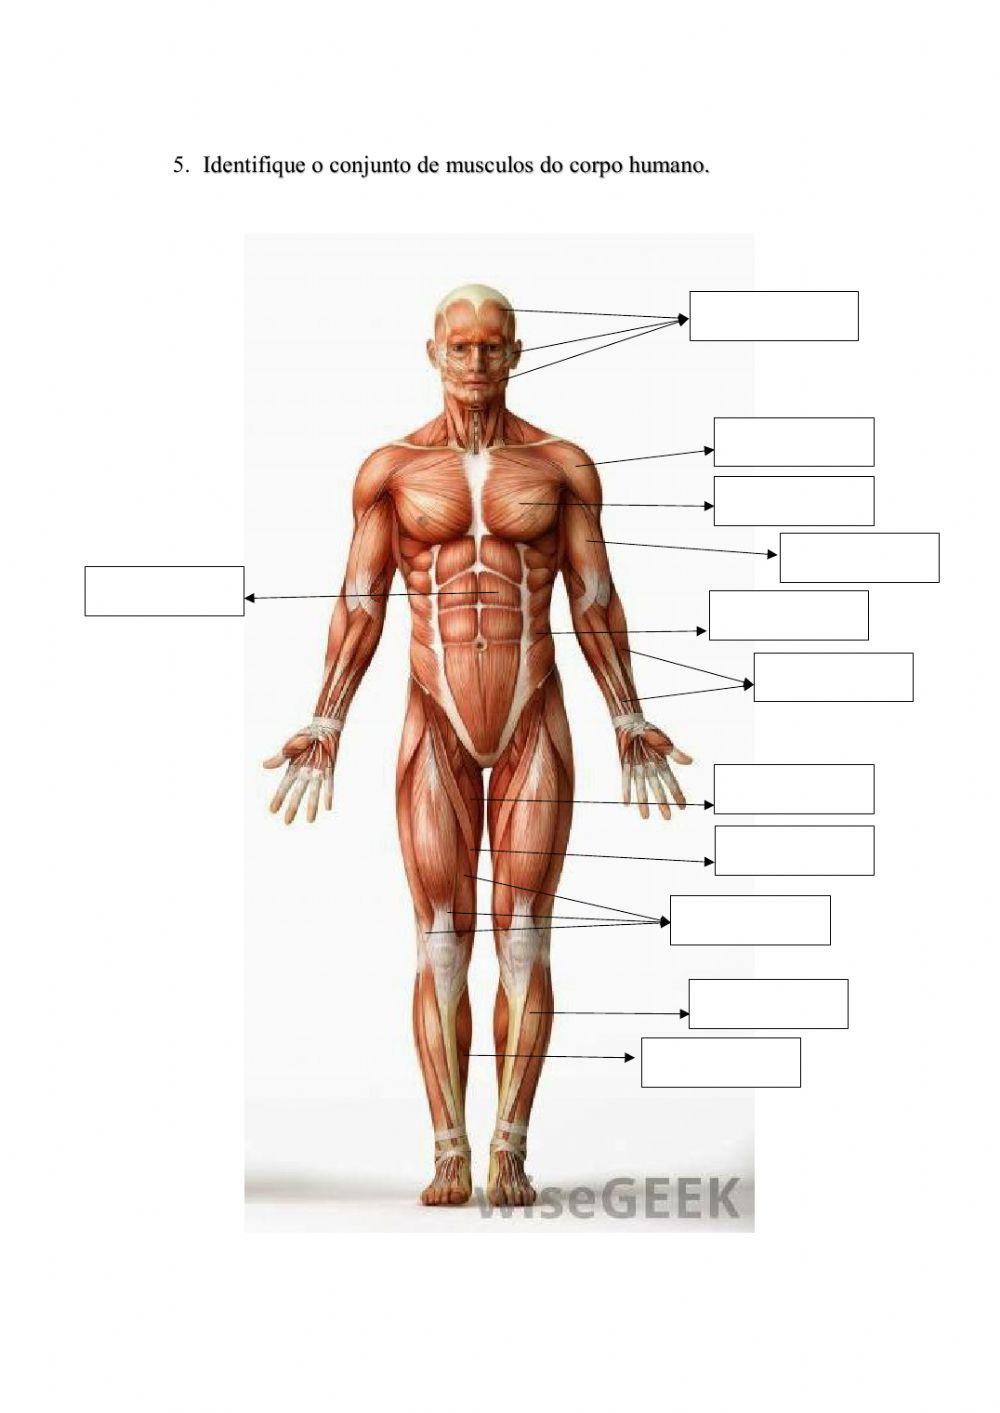 Os ossos e musculos